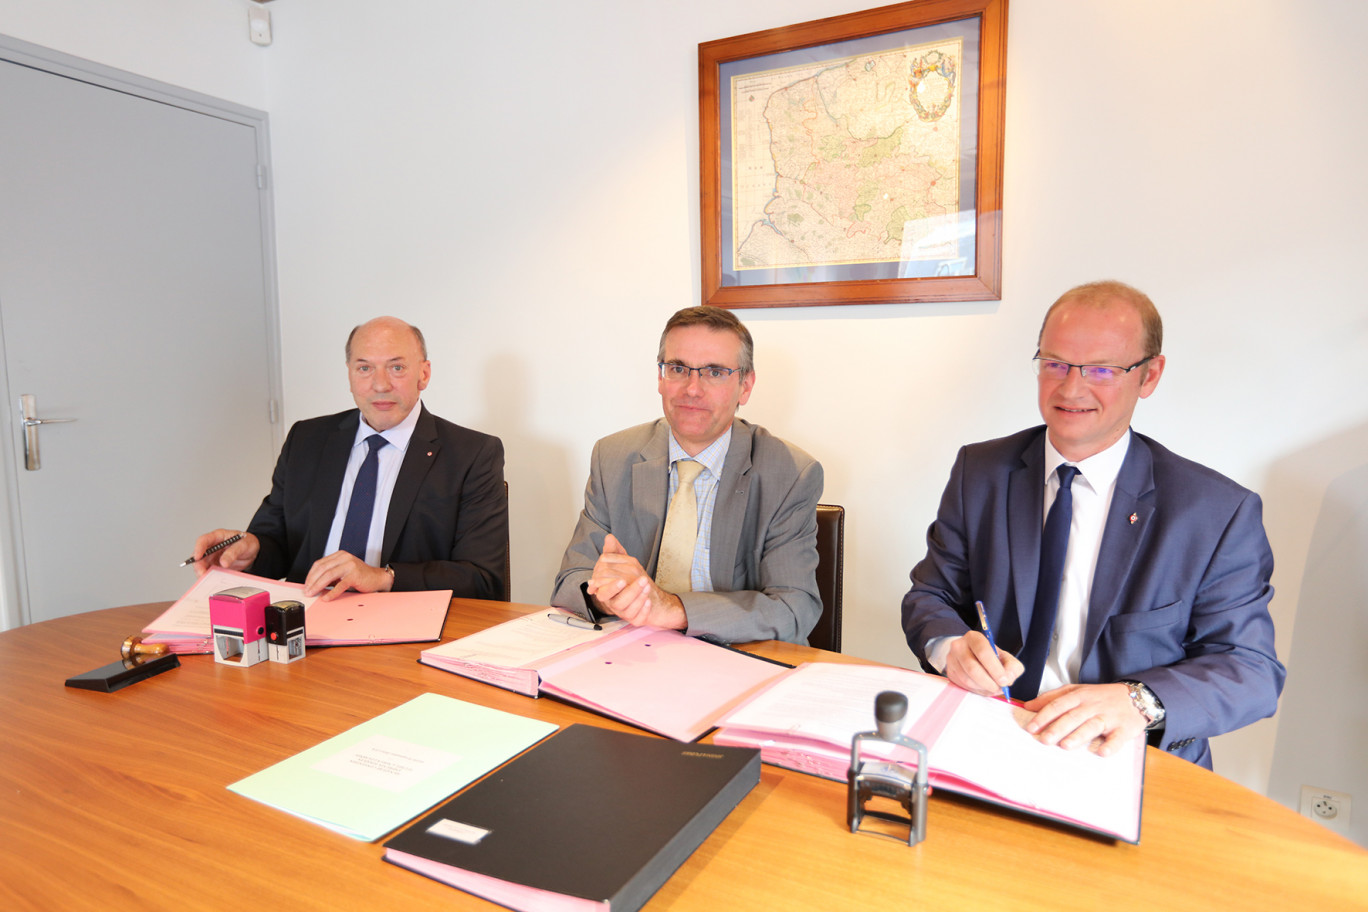 Les maires d’Auchel (à gauche) et de Nœux-les-Mines (à droite) ont signé la convention avec Nicolas Honoré sous-préfet de l’arrondissement de Béthune.